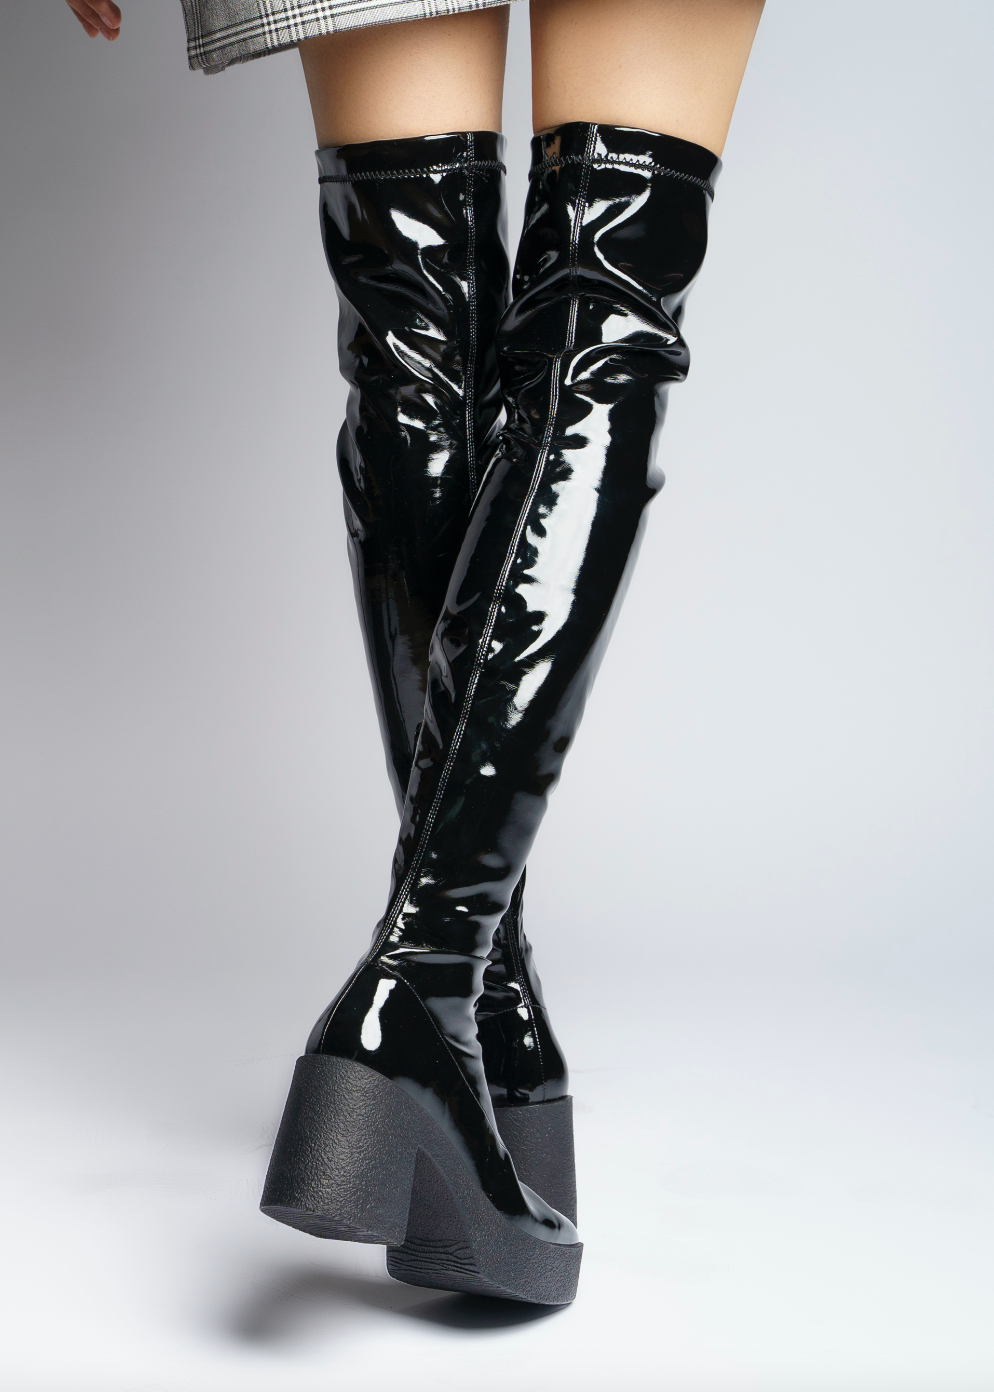 Yoshi Black Thigh-High Stretch Patent Boots 20077-03-02 - 6 a